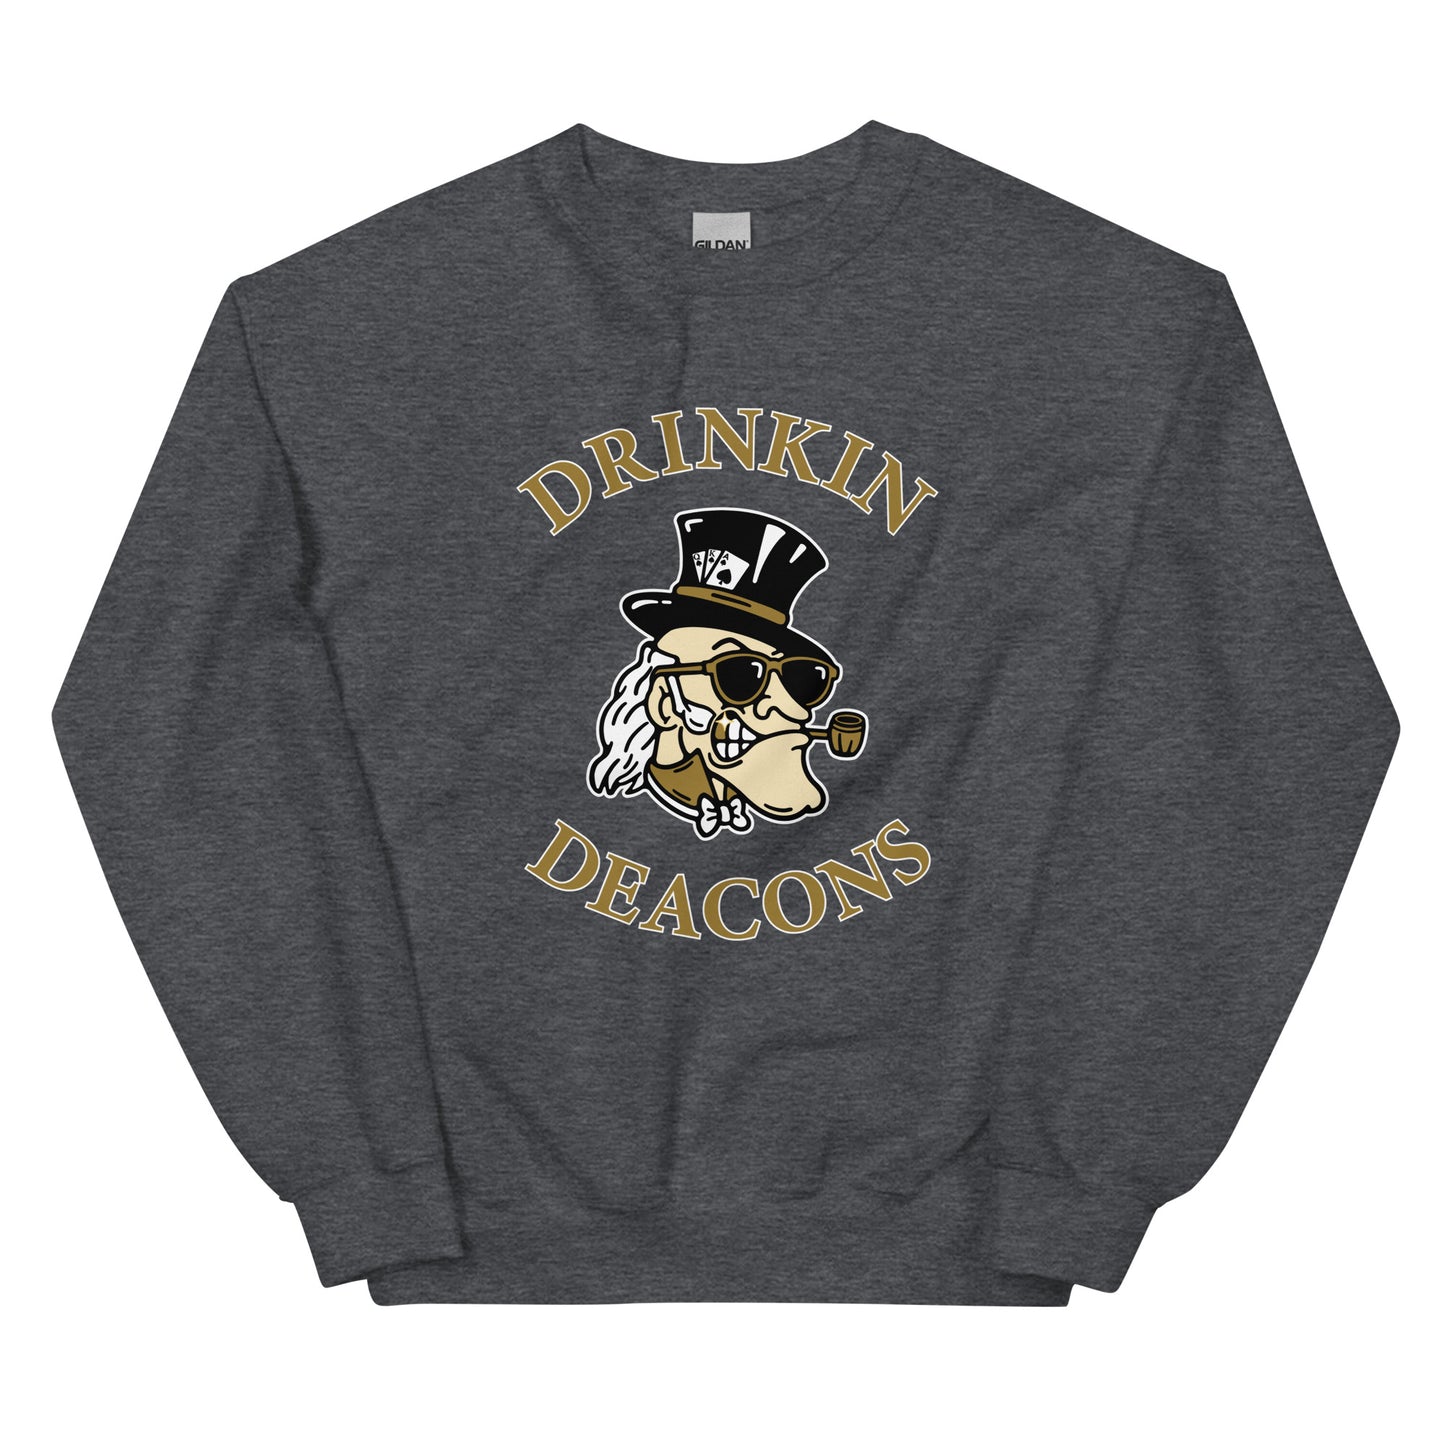 Drinkin Deacons Sweatshirt